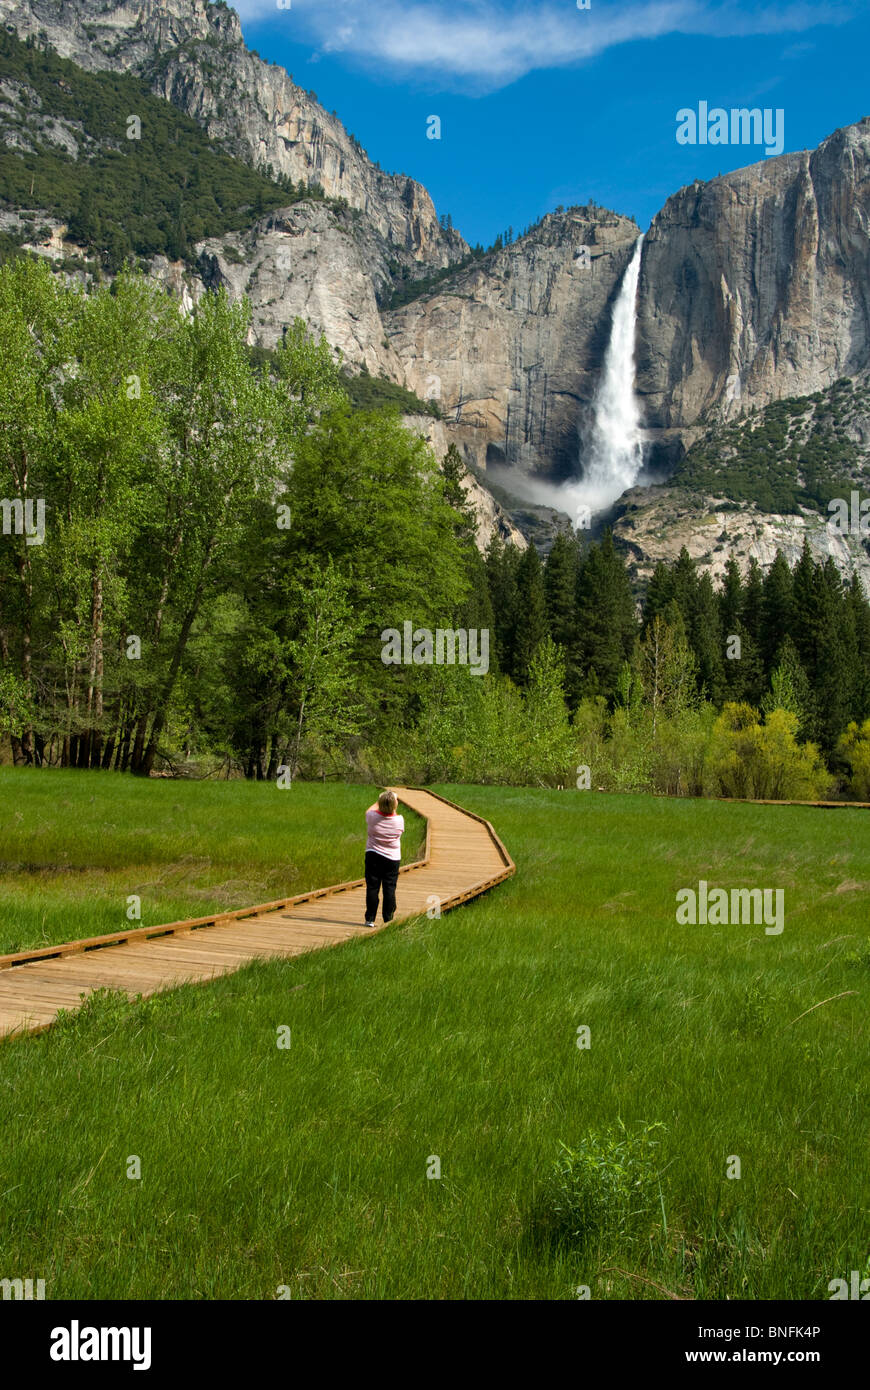 Californie, Yosemite National Park, Yosemite Falls, 739m, 2425 pieds, passerelle en bois, femme prend photo sur passerelle en bois Banque D'Images